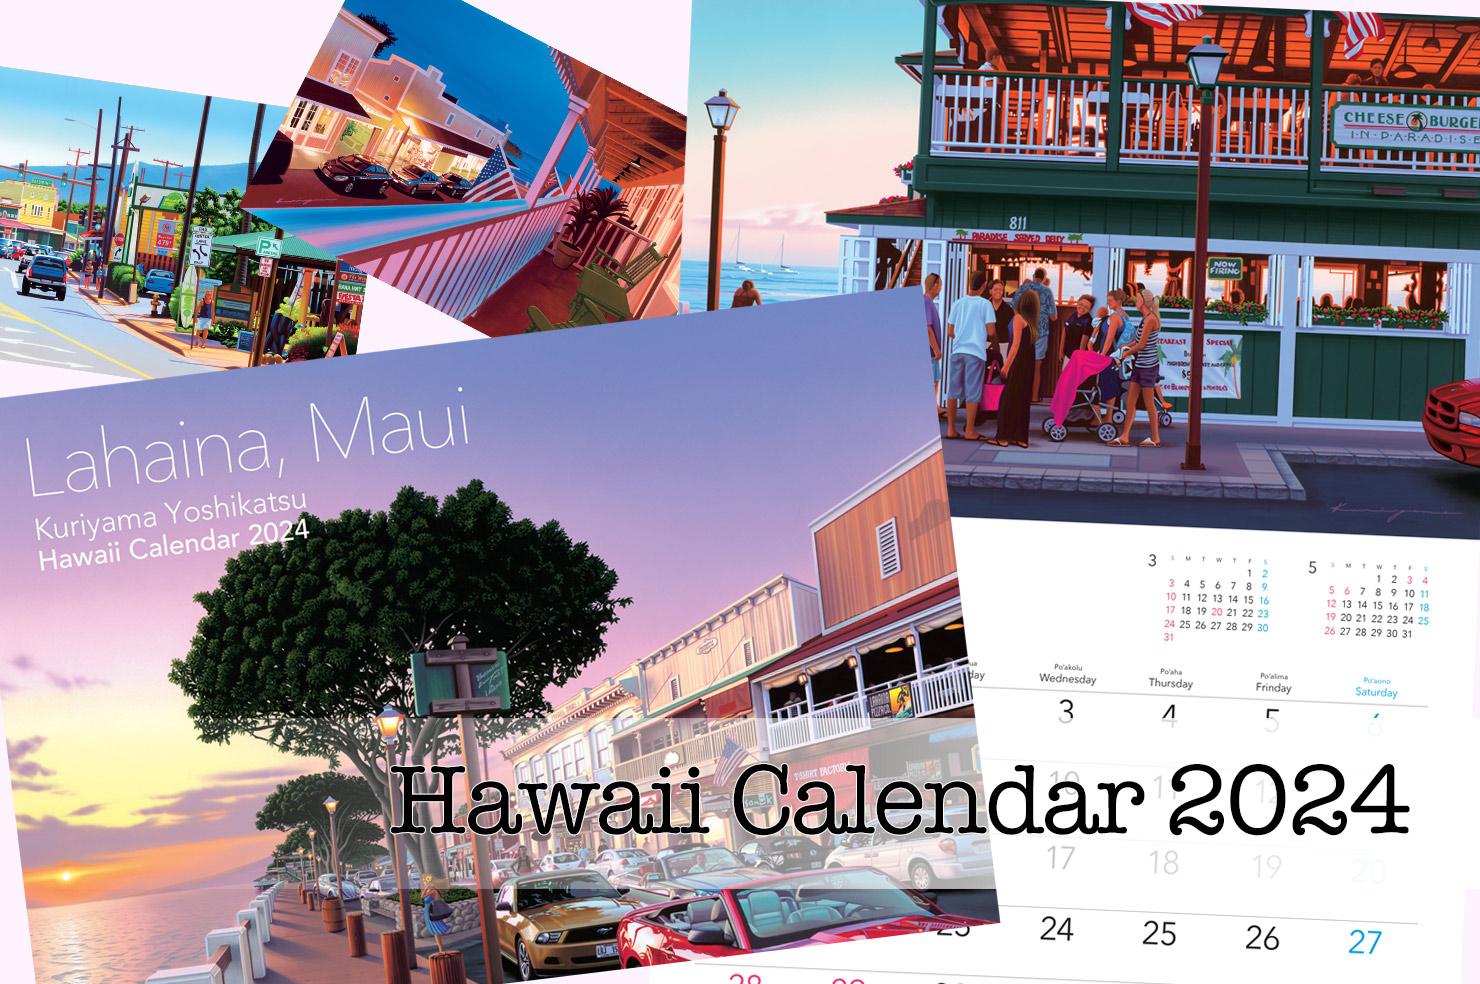 マウイ島の復興支援活動をサポート！
栗山義勝さんによる毎年人気のカレンダー